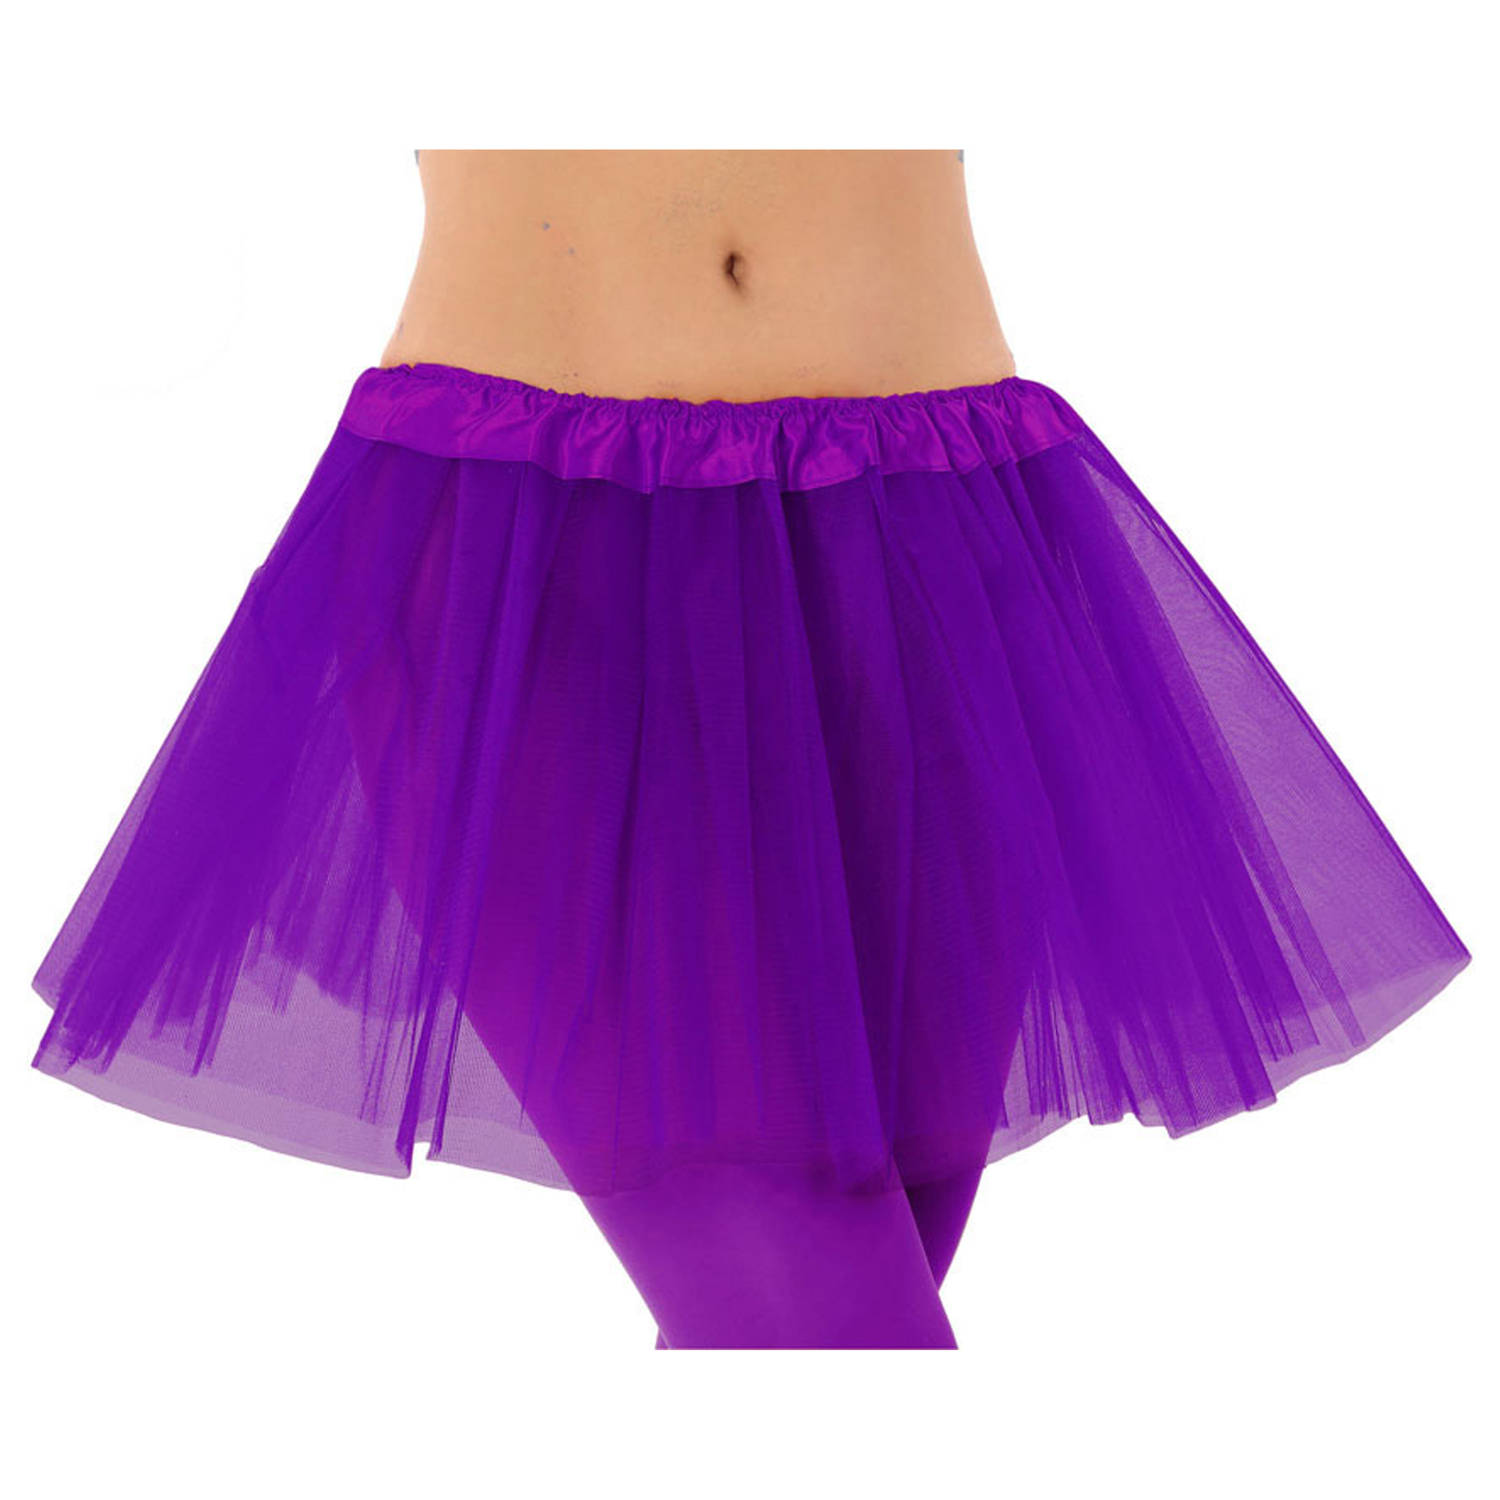 Meisjes verkleed rokje/tutu - tule stof met elastiek - paars - one size - Carnavalskostuums